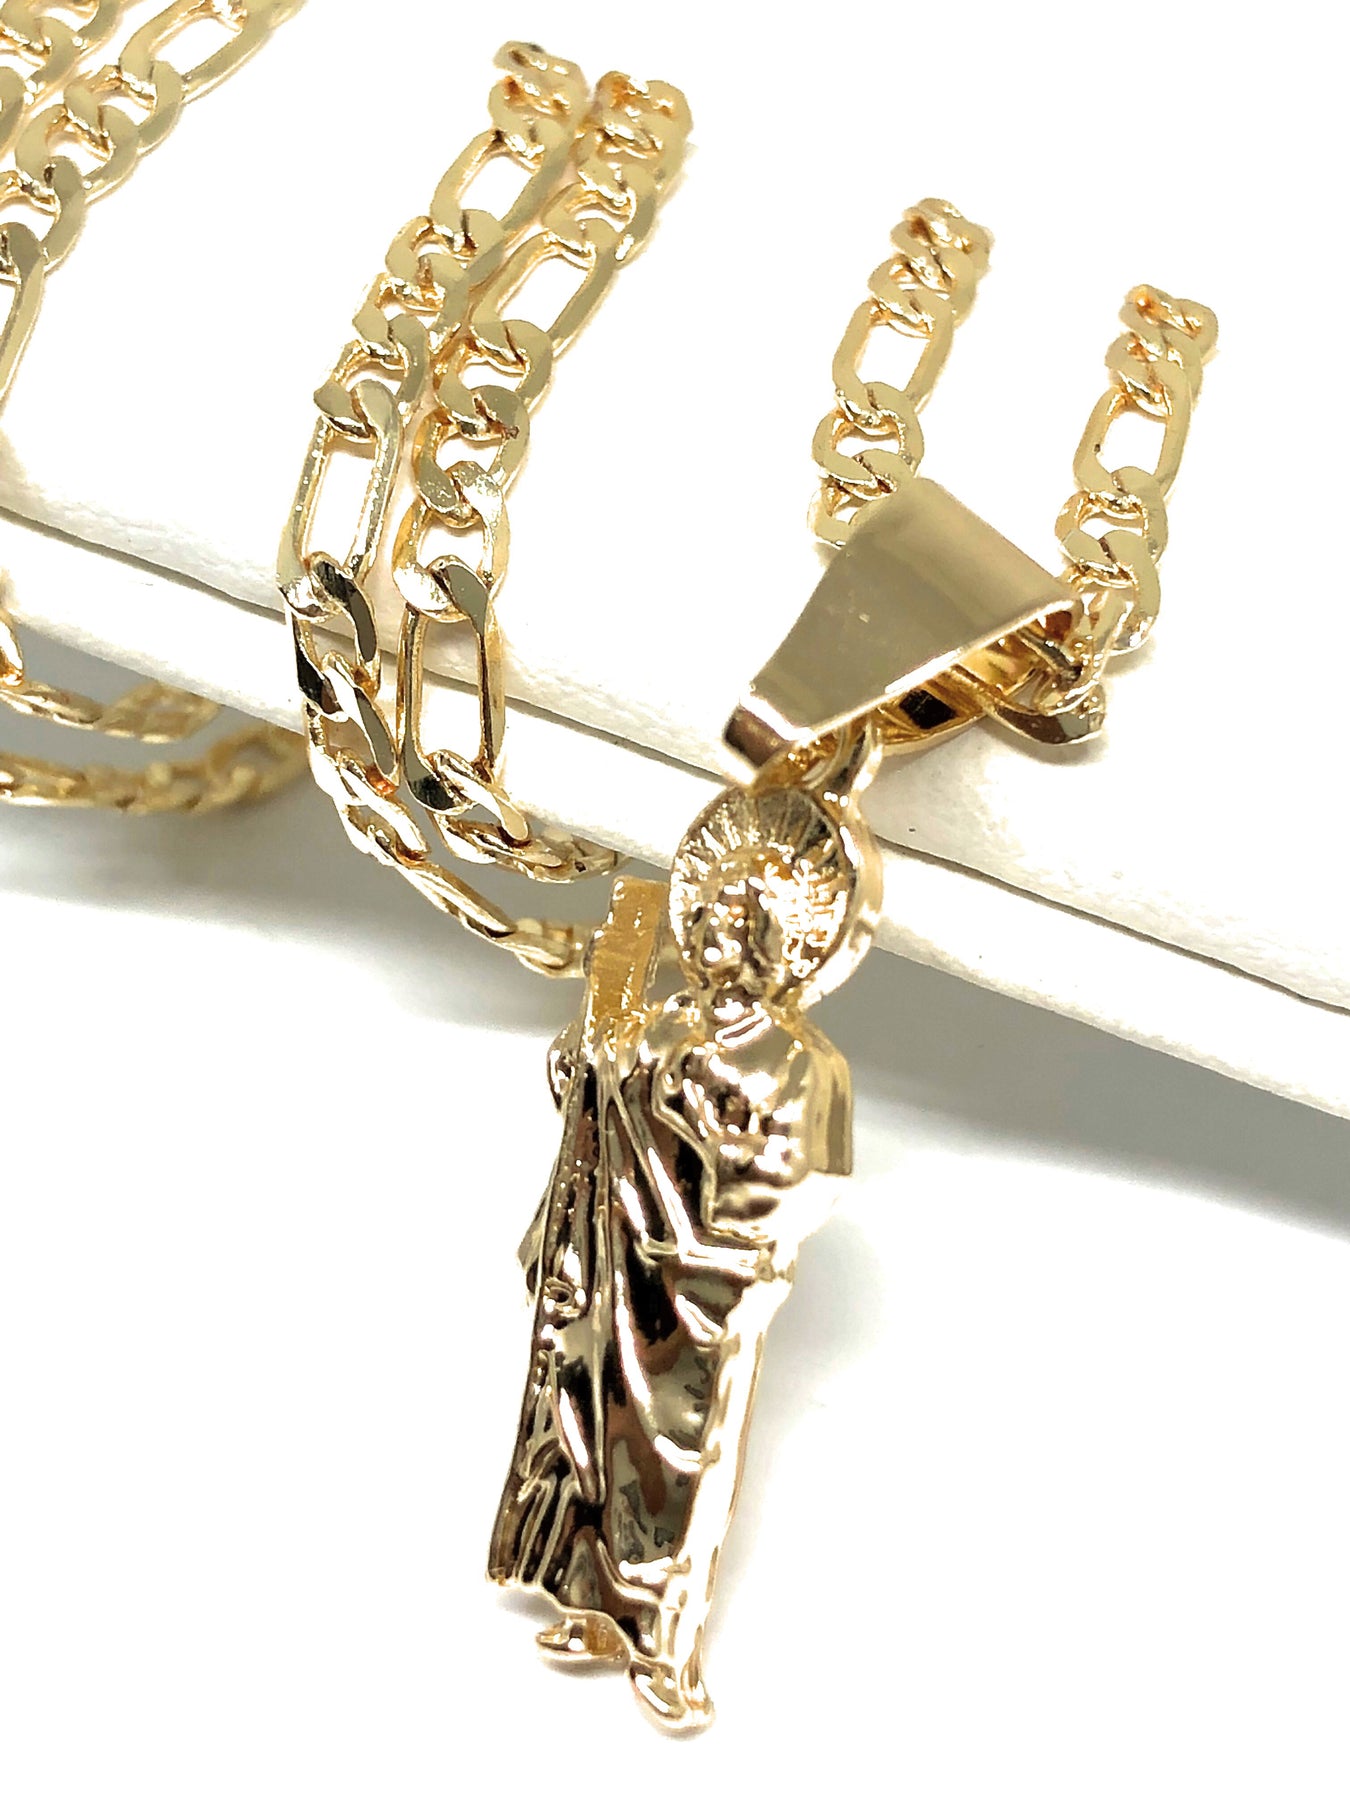 BEST Price Guaranteed Necklace CADENA, chain necklace cadenas